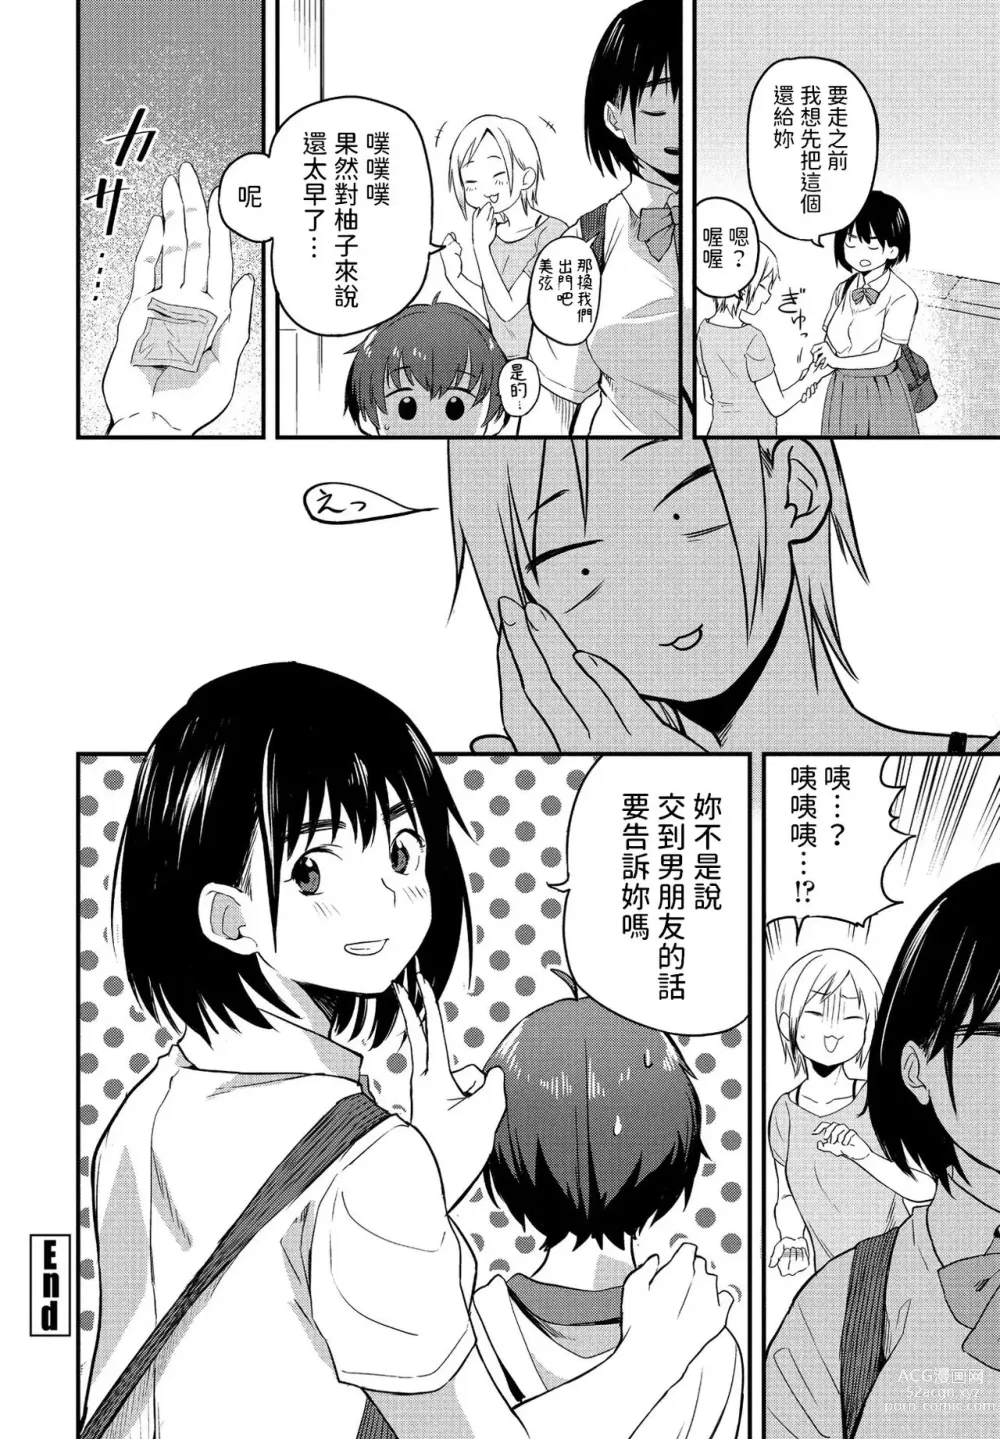 Page 18 of manga Massugu na Kimi ga Suki